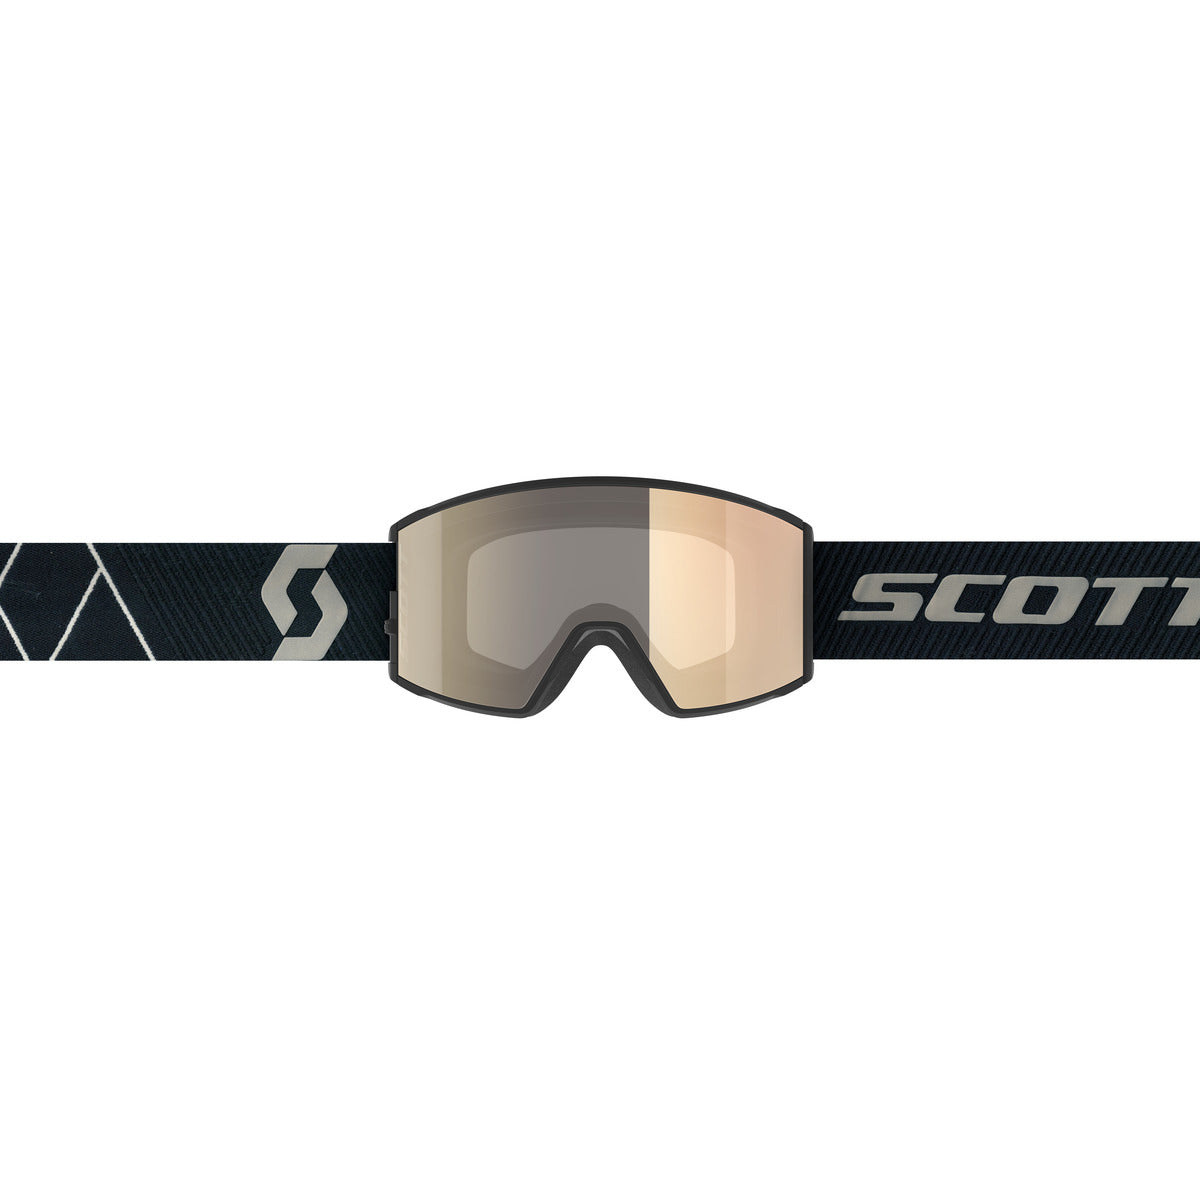 Scott React LS skibril zwart/wit